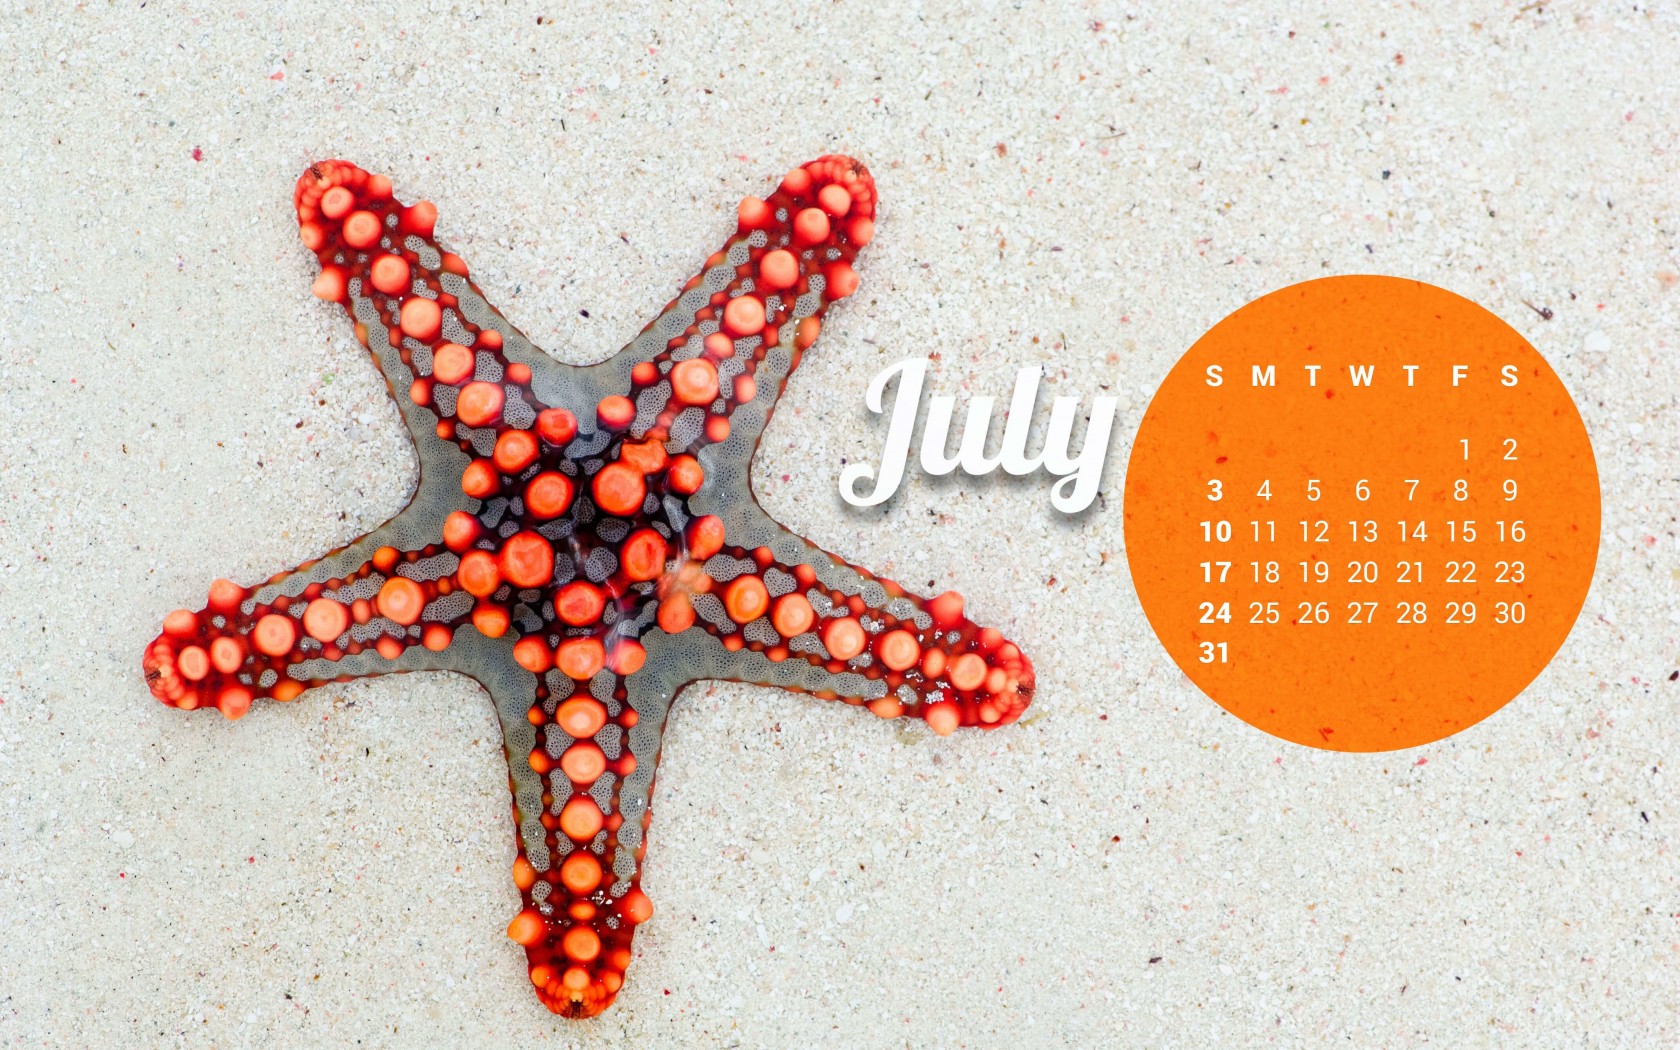 July 2016 Calendar Wallpaper for Desktop 1680x1050